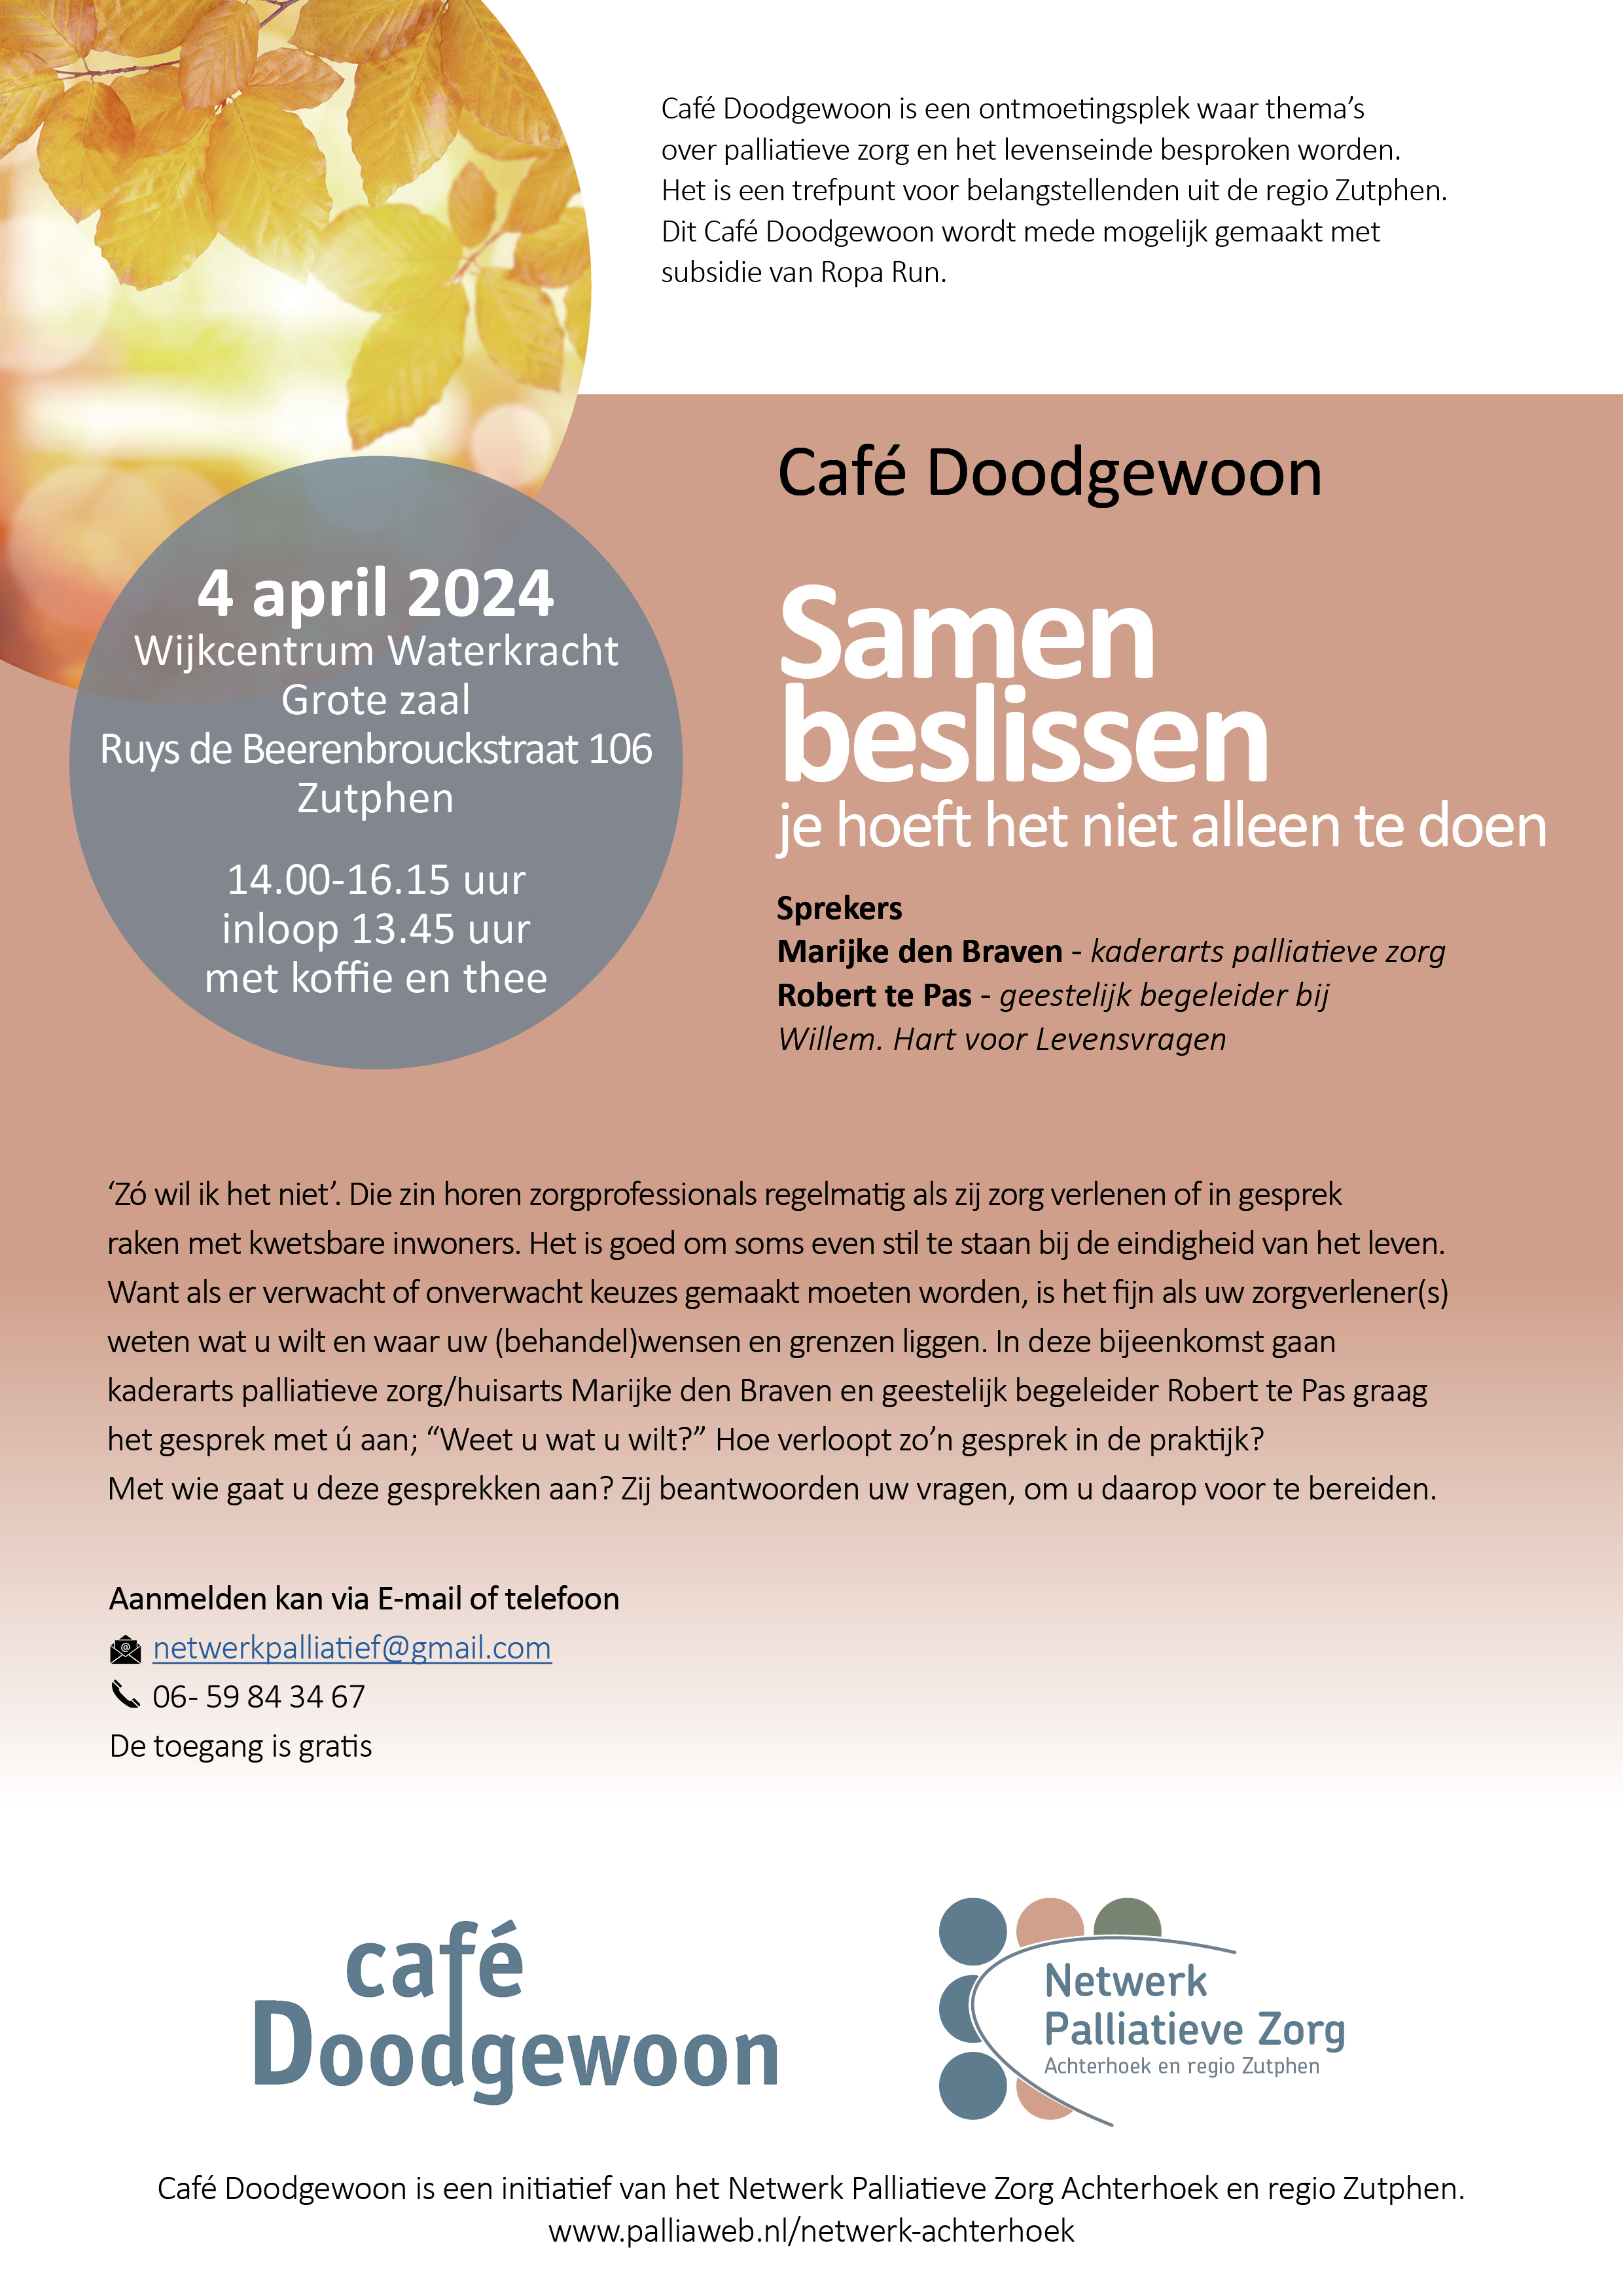 240404_Cafe-Doodgewoon_Samen-beslissen.jpg